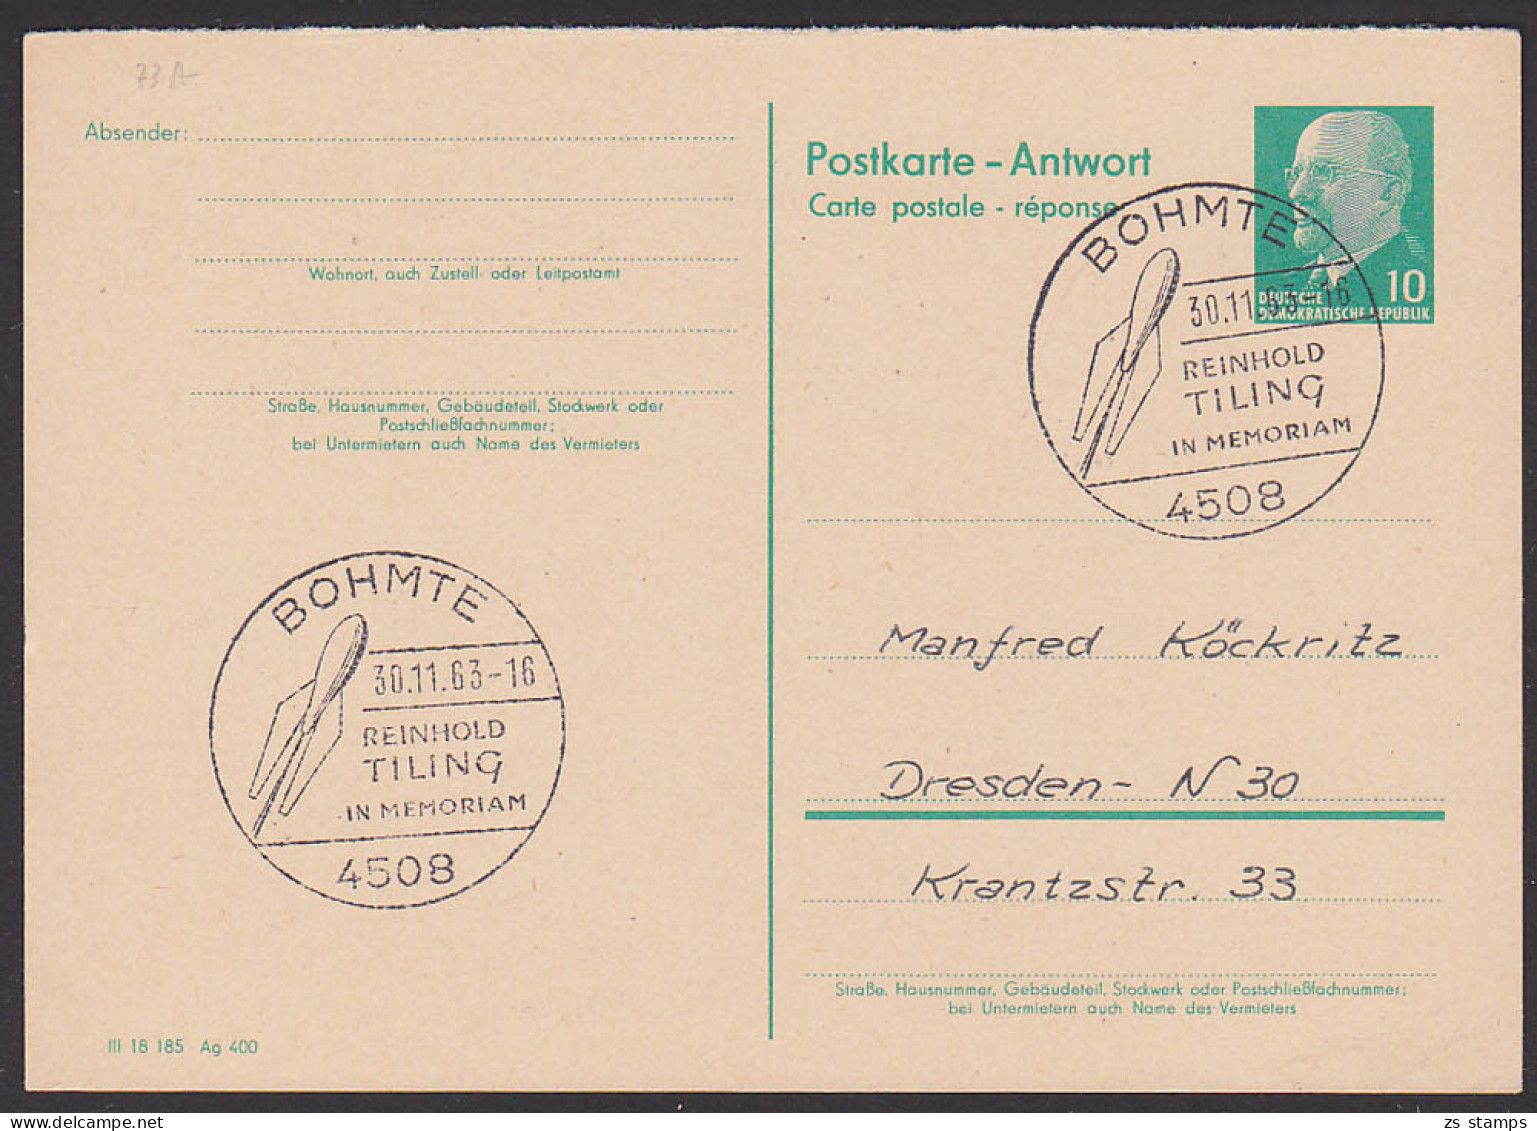 Bohmte Reinhold Tiling Im Memoriam 1963 Auf DDR-GA, Abb. Rakete - Postkarten - Gebraucht